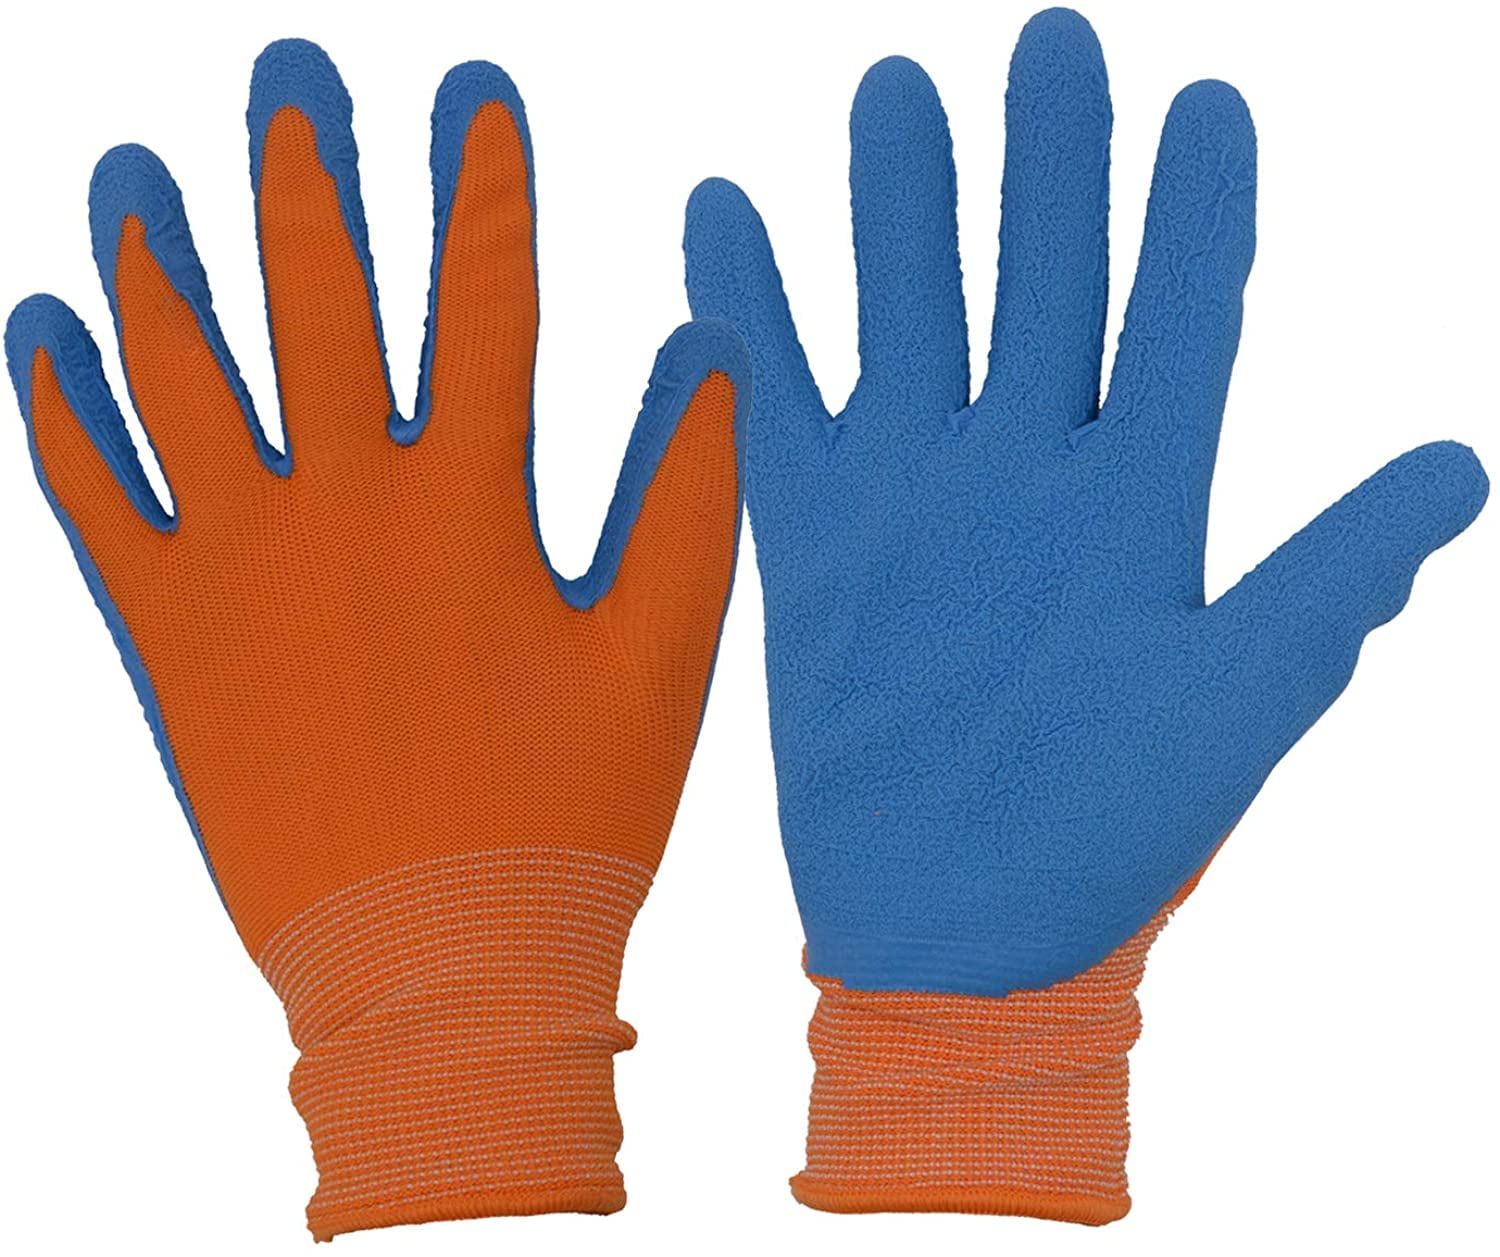 2Pairs Kids Gardening Gloves Foam Rubber Coated Childrens Garden Work Gloves 